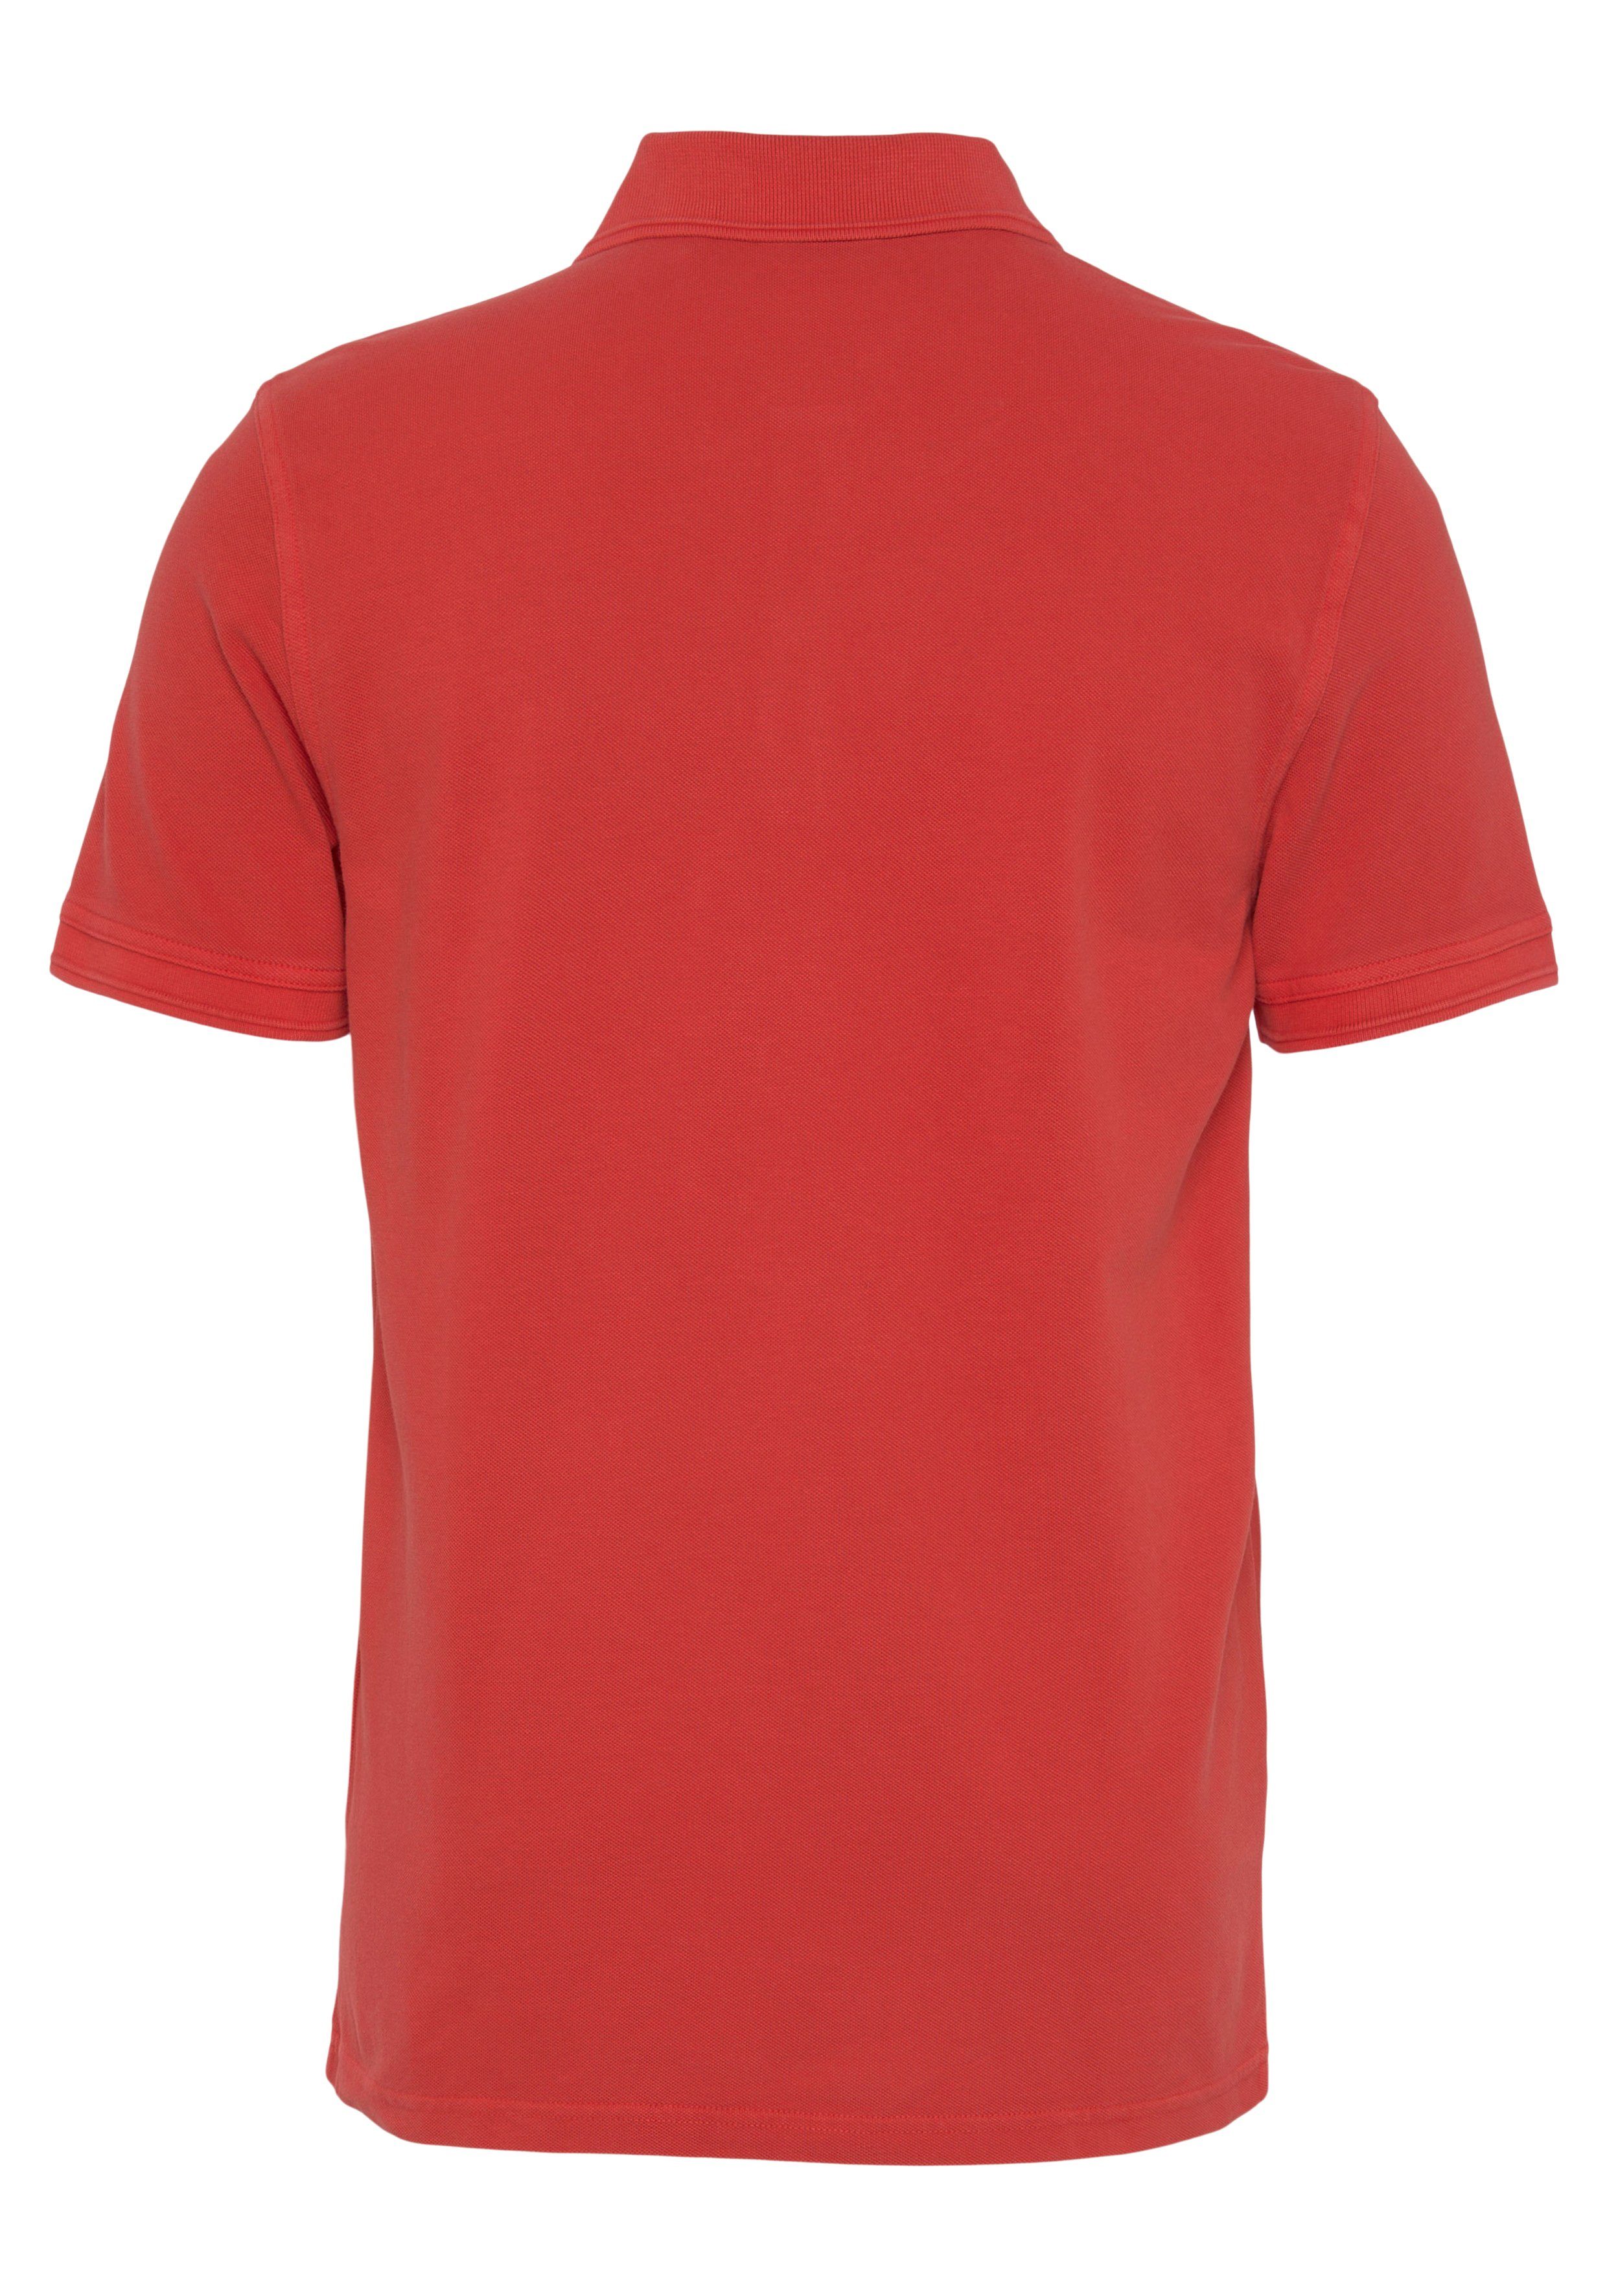 BOSS mit 10203439 ORANGE Brust Bright_Red Prime 01 Poloshirt Logoschriftzug der dezentem auf